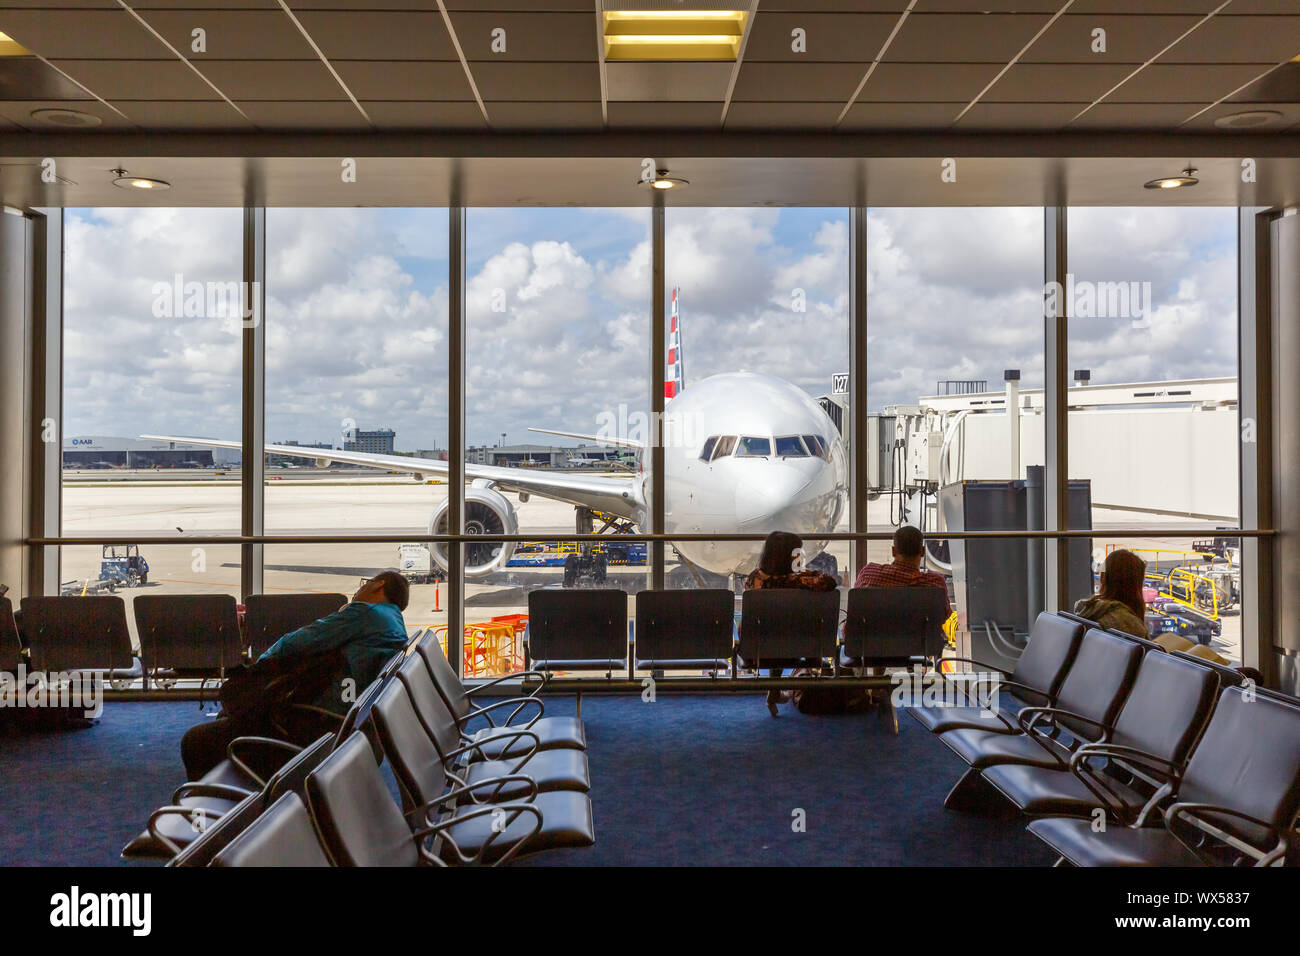 Miami, Florida - Aprile 7, 2019: immagine simbolica aviation passeggeri American Airlines aereo all'aeroporto di Miami (MIA) negli Stati Uniti. Foto Stock